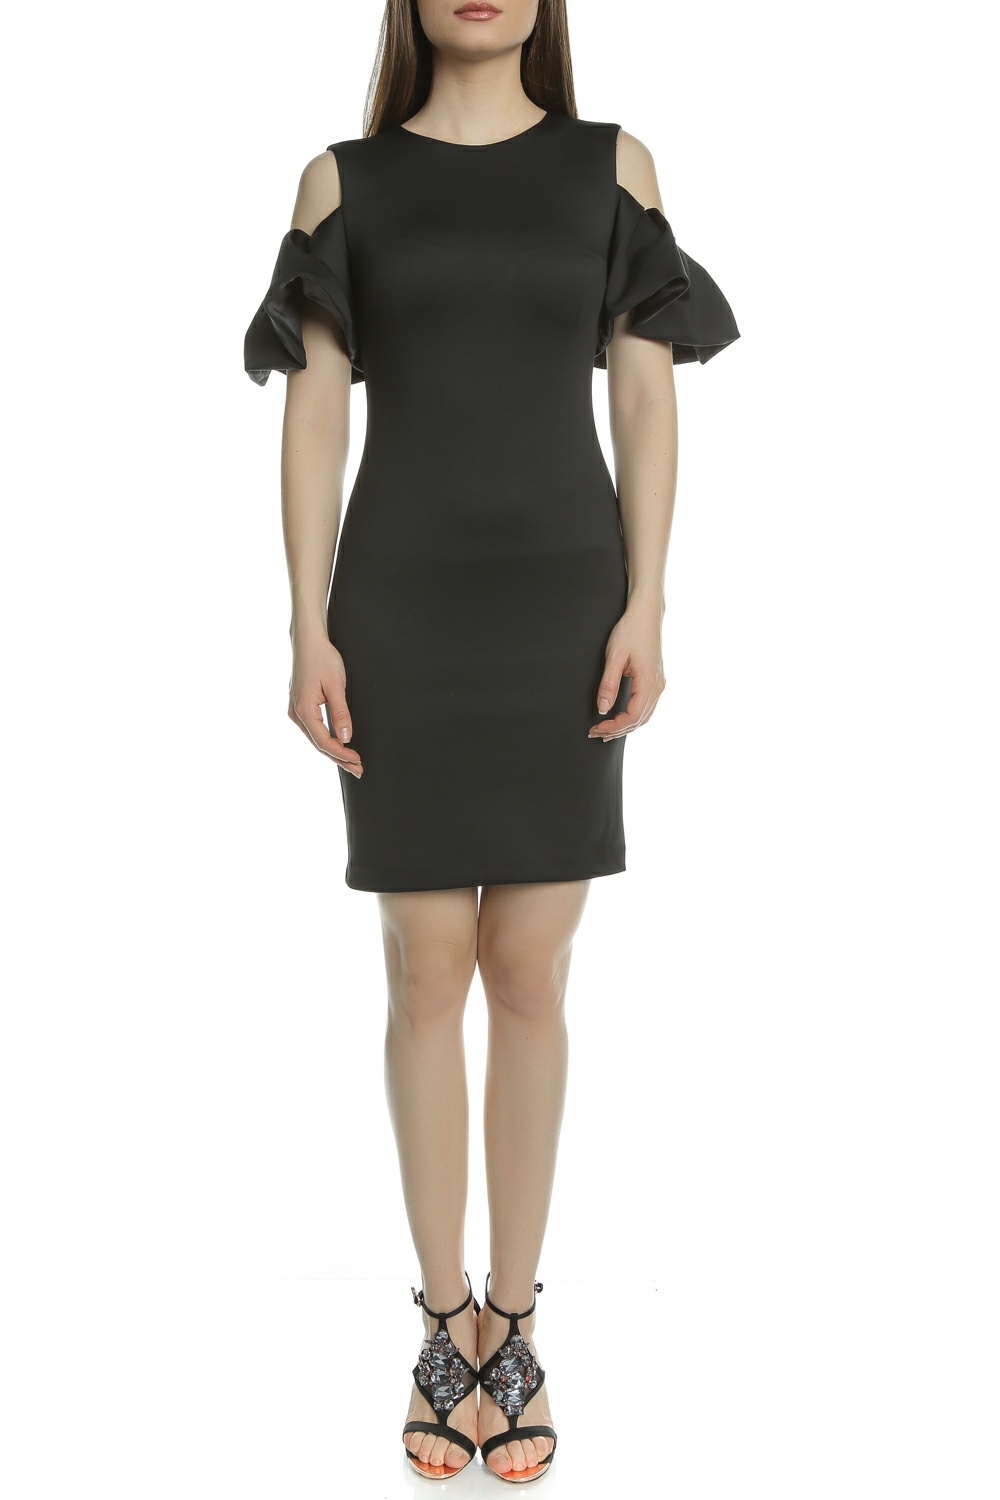 Γυναικεία/Ρούχα/Φορέματα/Μίνι TED BAKER - Γυναικείο μίνι φόρεμα με ανοιχτούς ώμους SALNIE EXTREME μαύρο